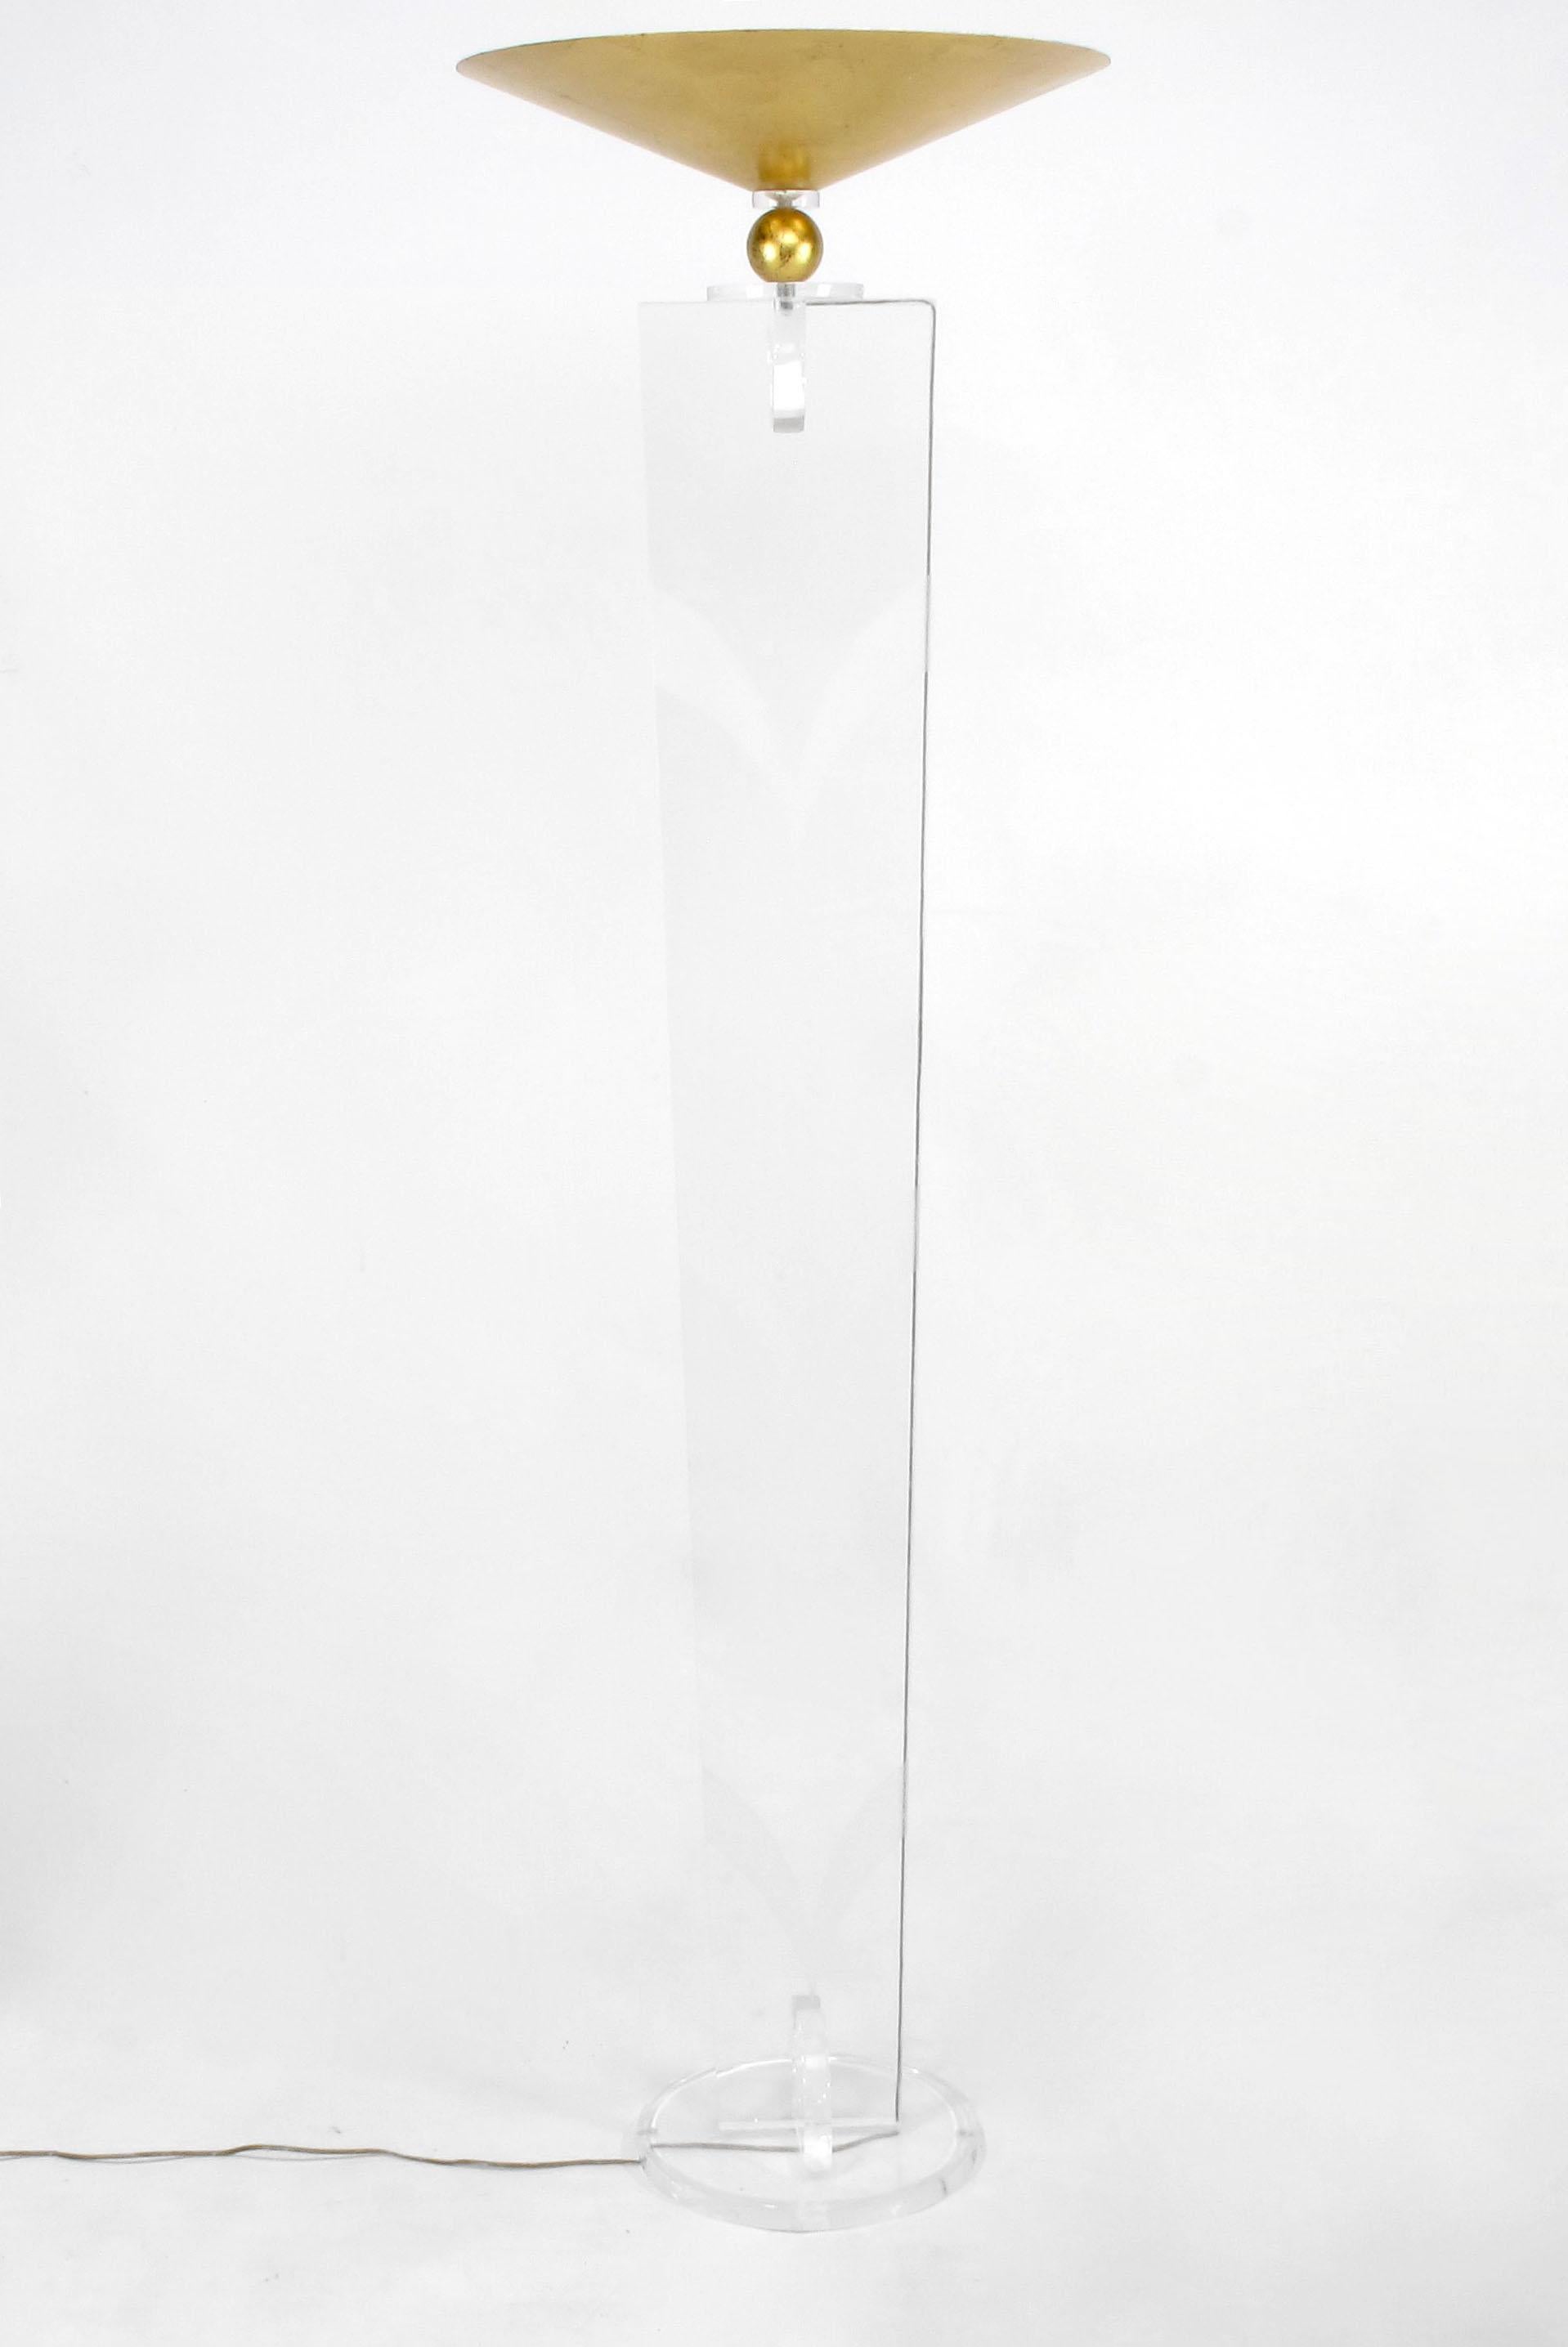 Zwei hohe und elegante Lucite-Fackeln mit vergoldeten Metallschirmen des Lucite-Künstlers Hivo Van Teal. Konisch zulaufende Körper mit geätzten, stilisierten Chevron-Mustern und vergoldeten Metallkugeln, die zu umgekehrt vergoldeten Metallschirmen